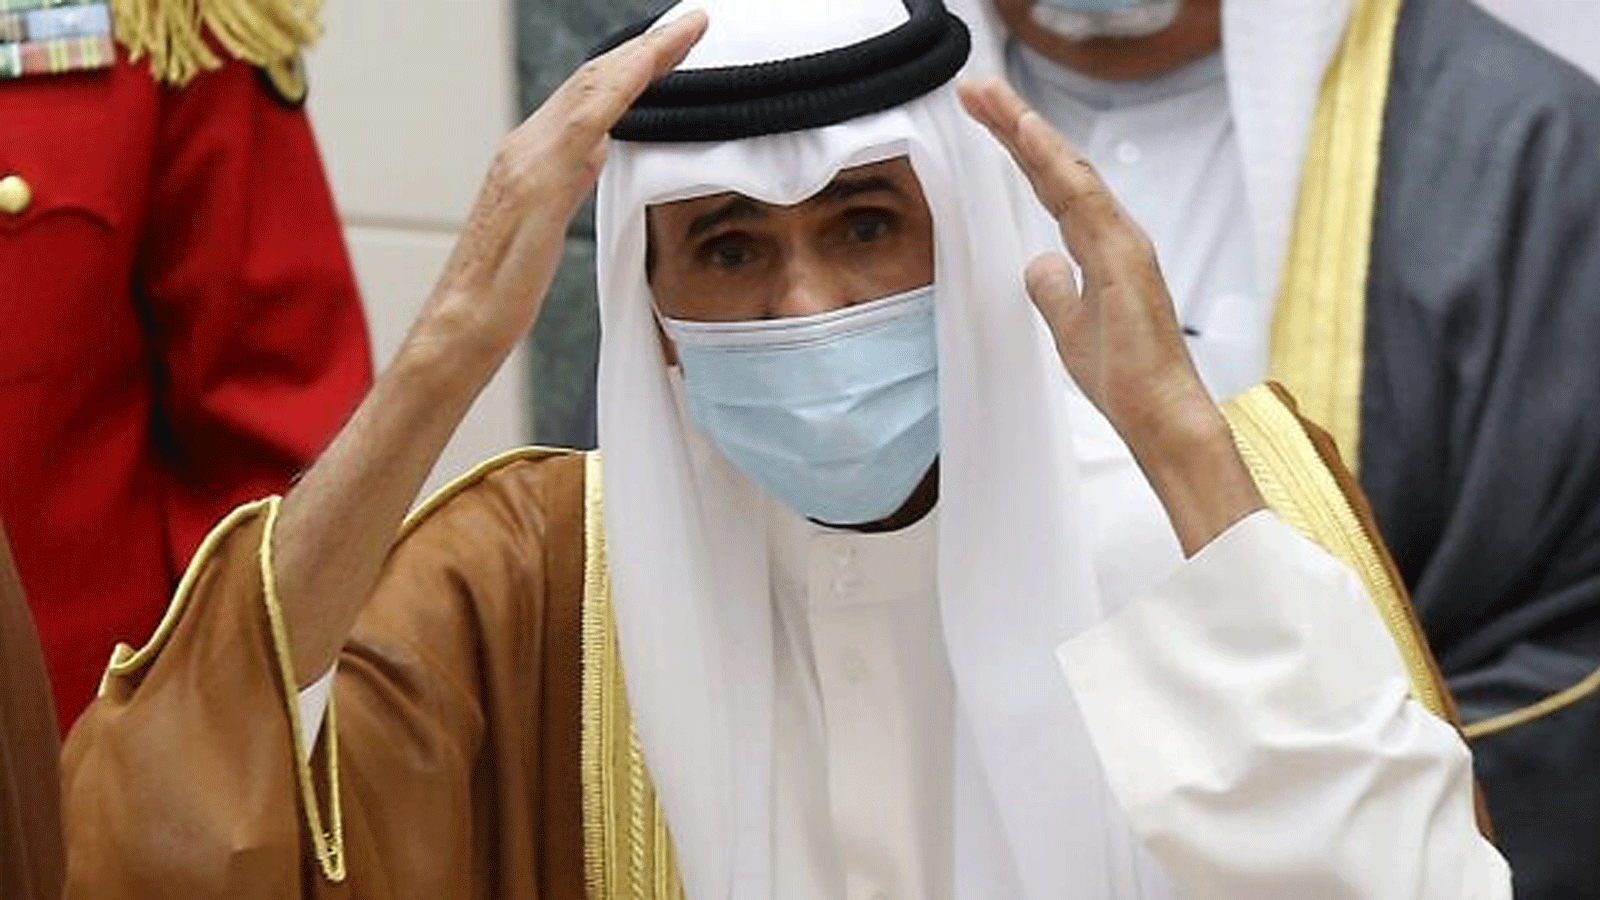 الشيخ نواف الأحمد الصباح يحيي الحضور بعد تأدية اليمين الدستورية في مجلس الأمة في مدينة الكويت. 30 أيلول/ سبتمبر 2020.